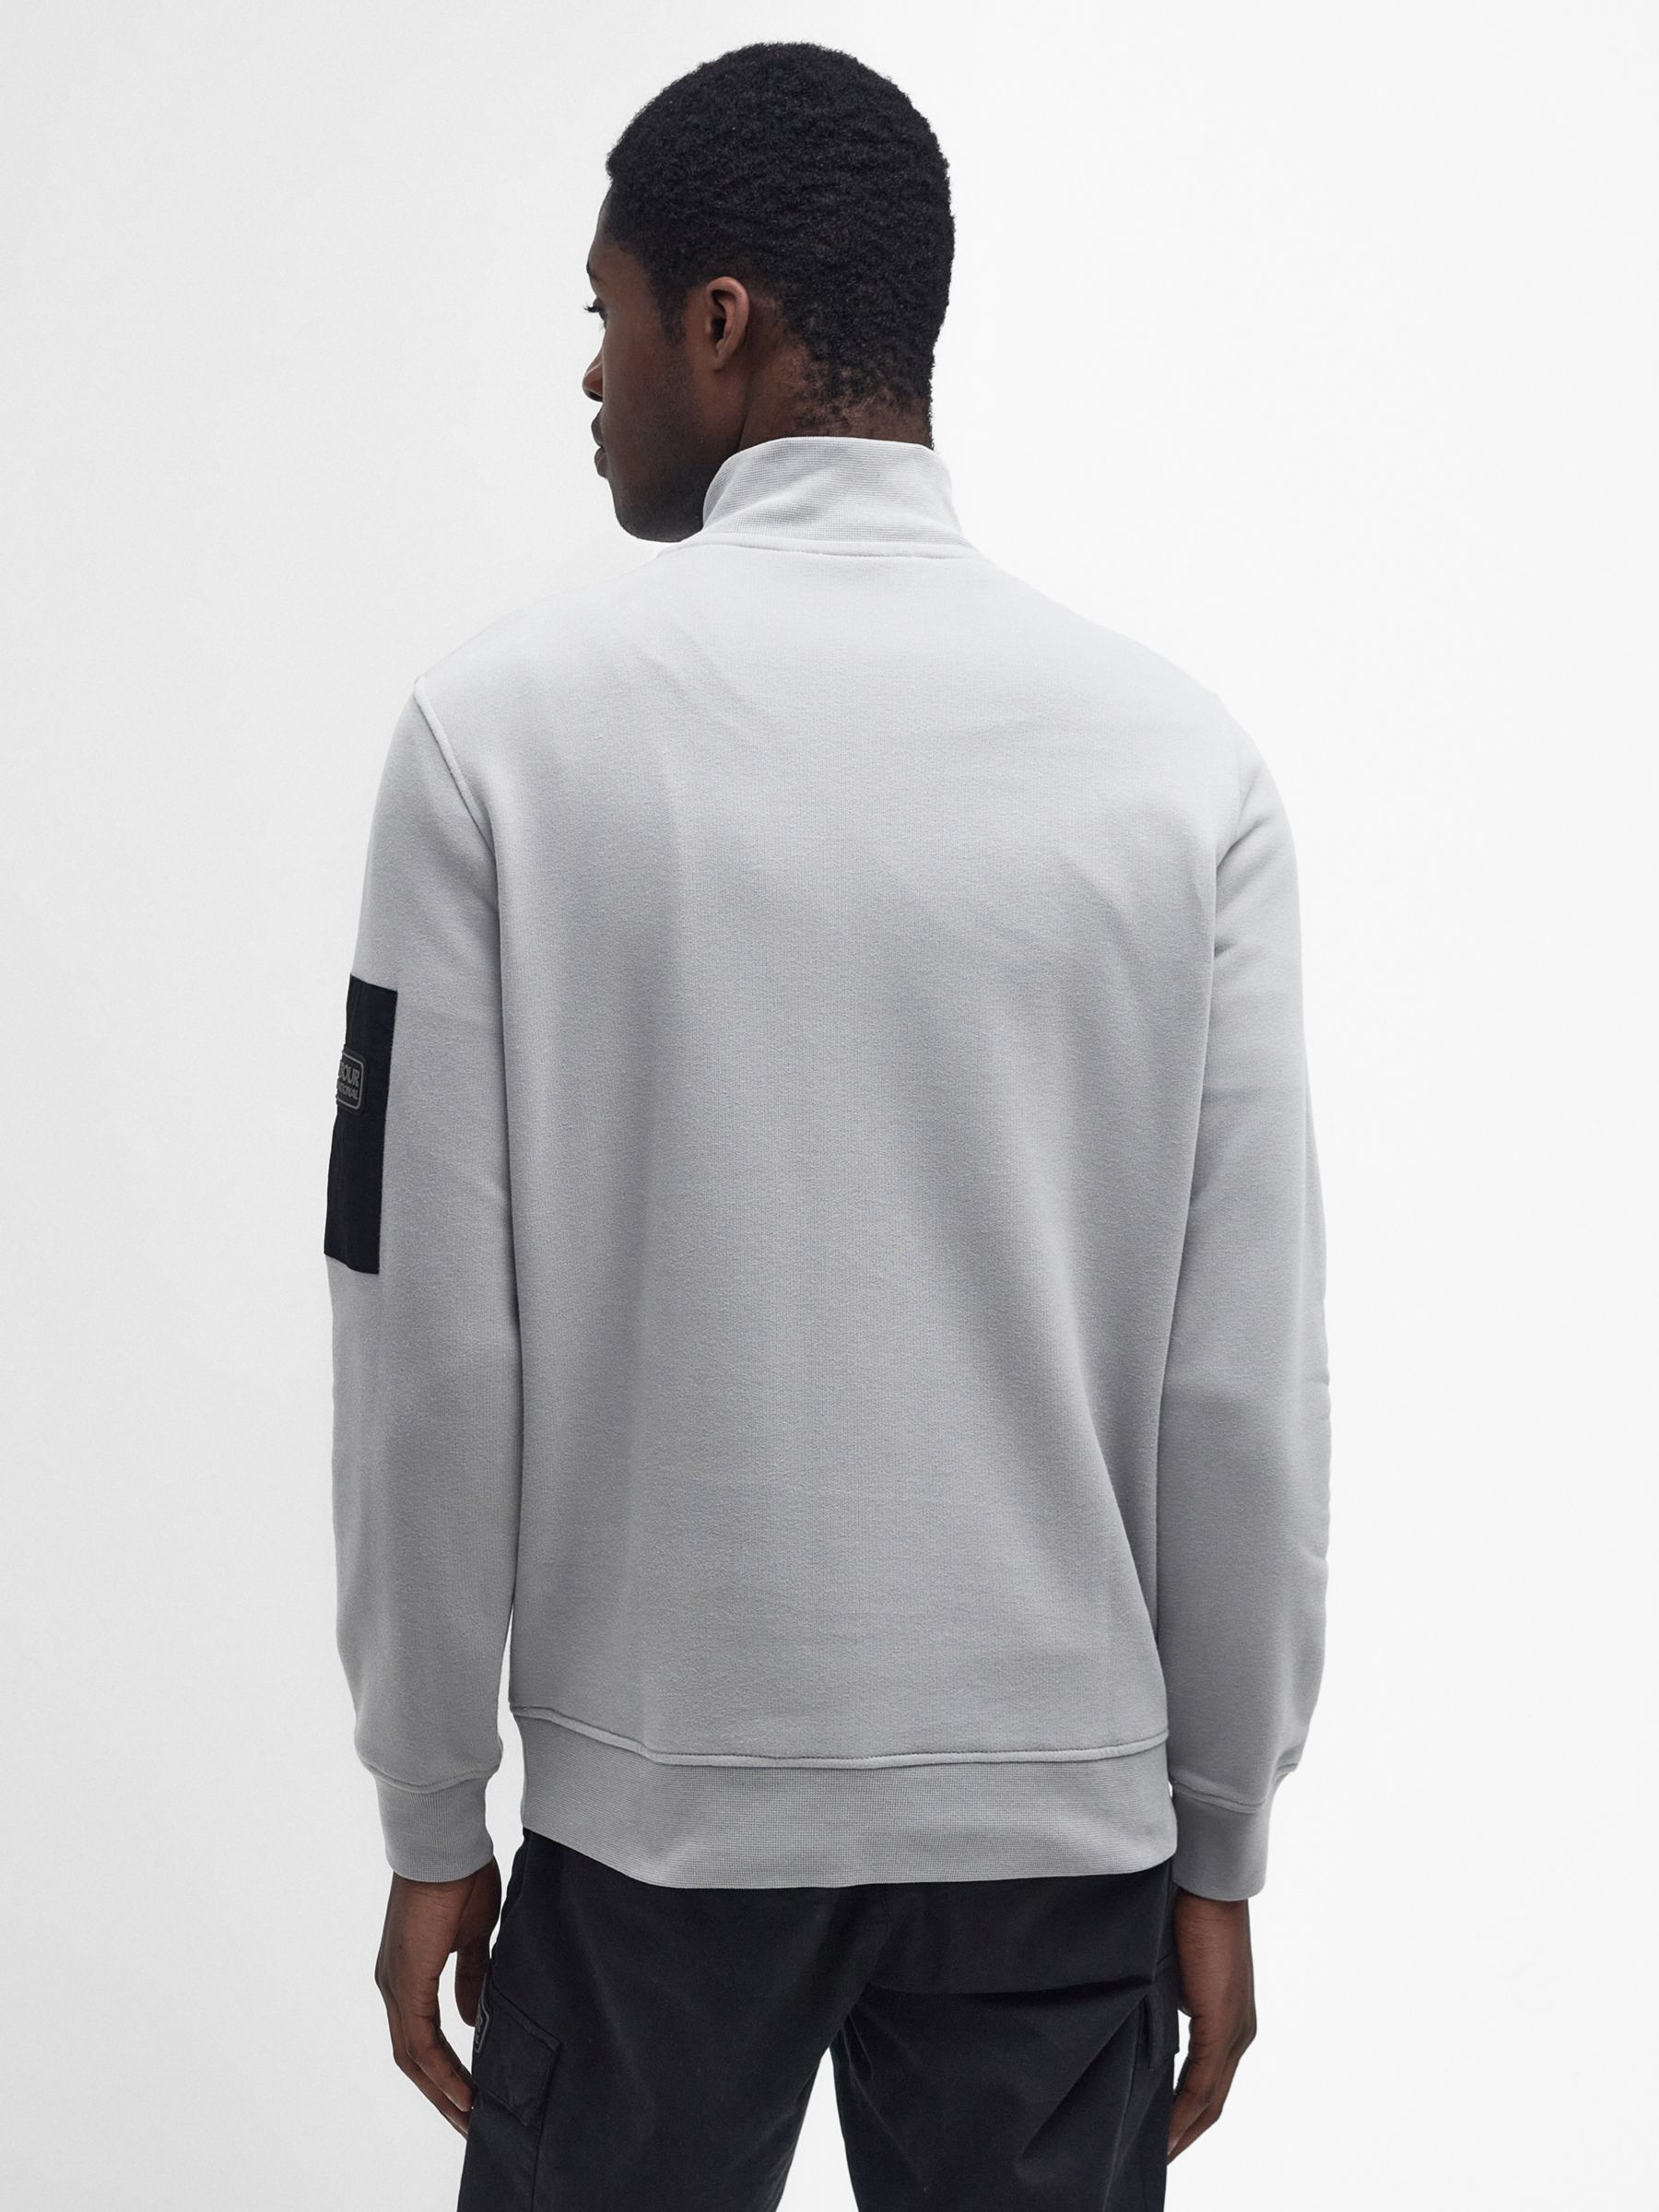 Barbour International Alloy Half Zip Sweatshirt, Ultimate Grey, S